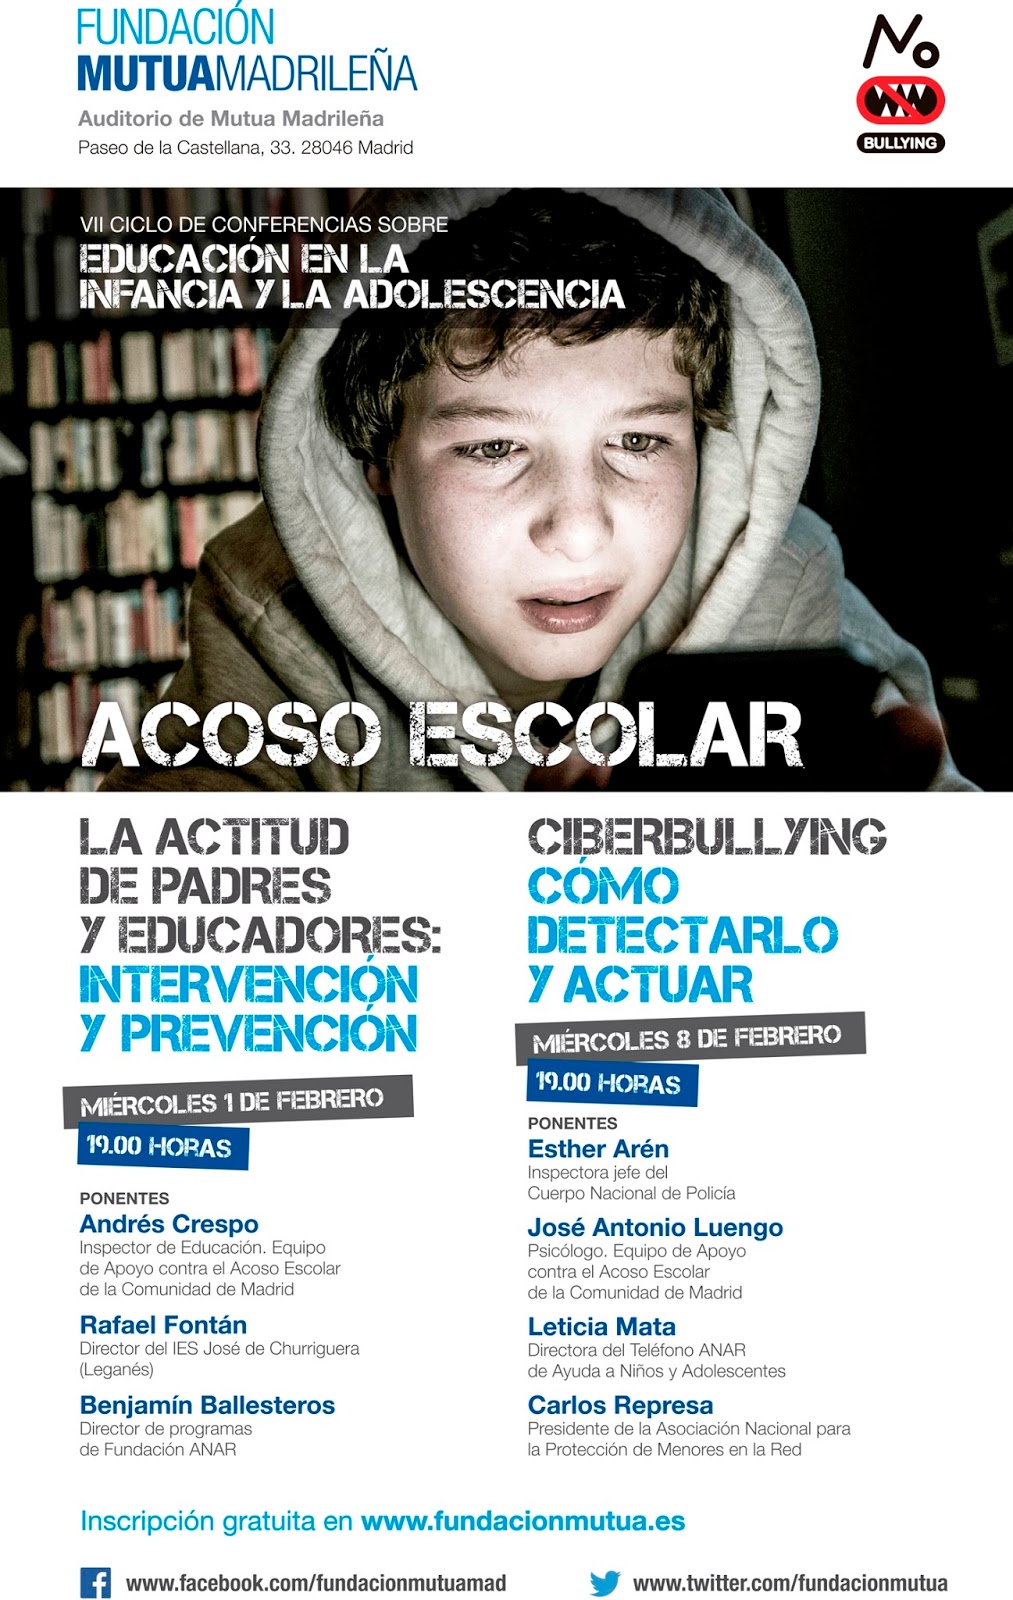 ANAR con Fundación Mutua Madrileña en el VII Ciclo de Conferencias sobre Educación en la Infancia y la Adolescencia